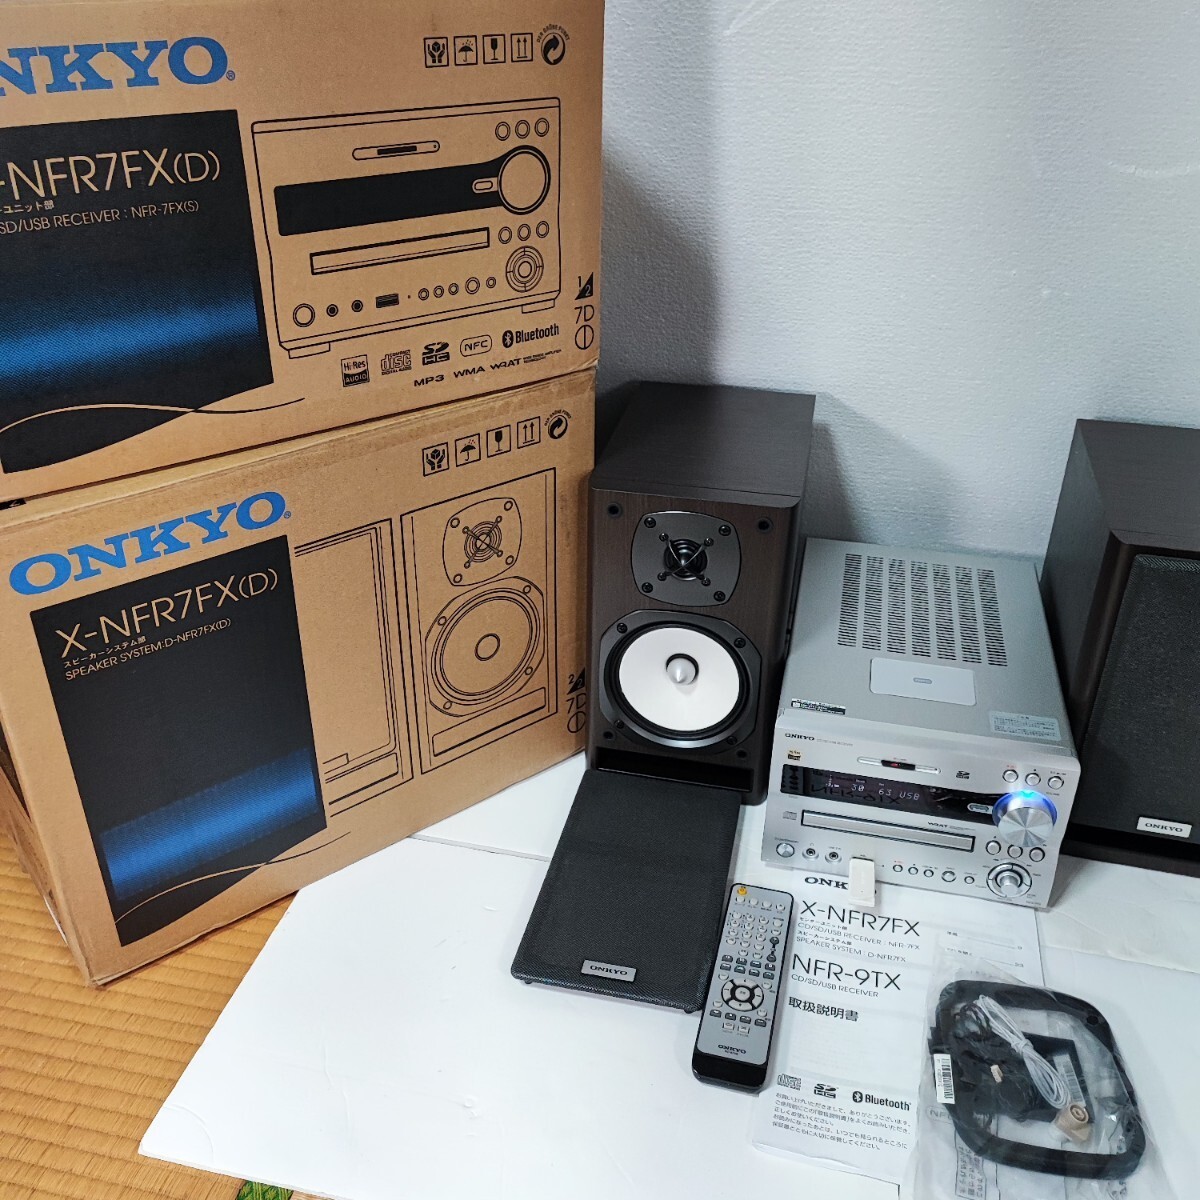 〓新品に近い〓 ONKYO X-NFR7FX(D) CD/SD/USBレシーバーシステム、ハイレゾ対応、2019年製の超美品商品★元箱入りの画像4